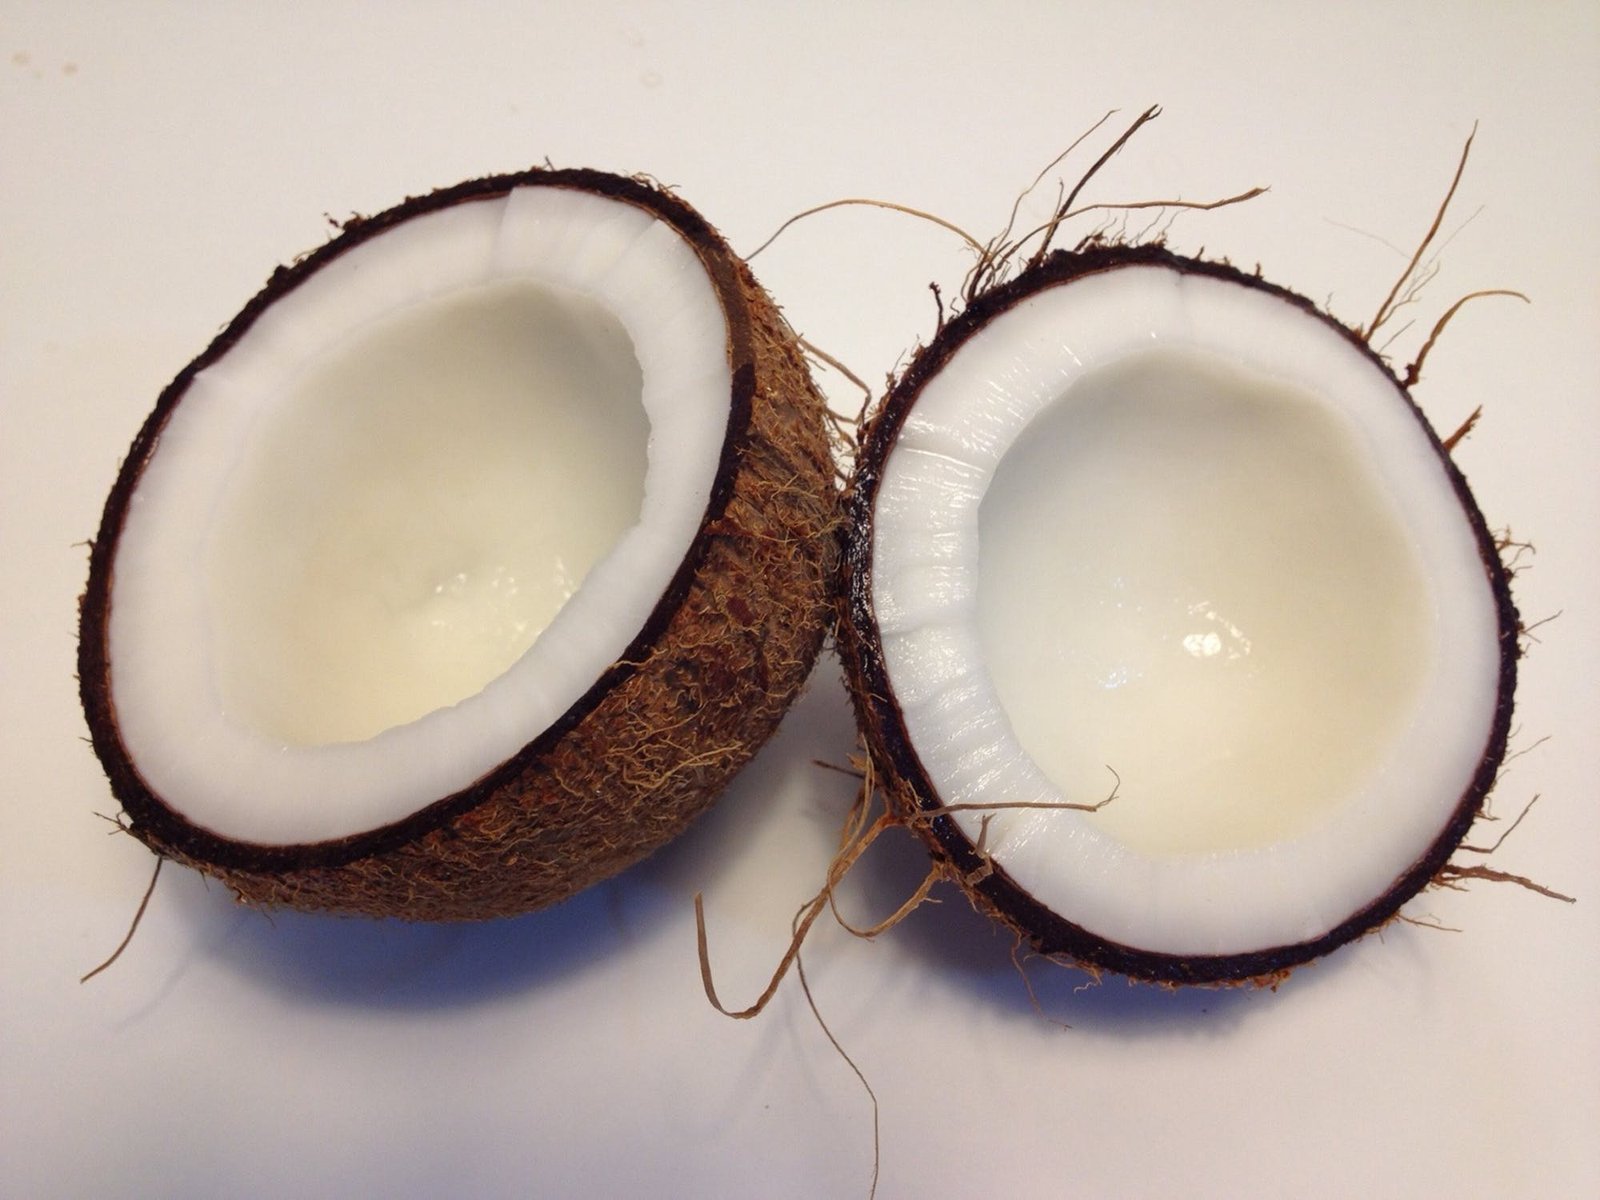 Abnehmen mit Kokosöl - Das ist die einfachste Diät, die es gibt